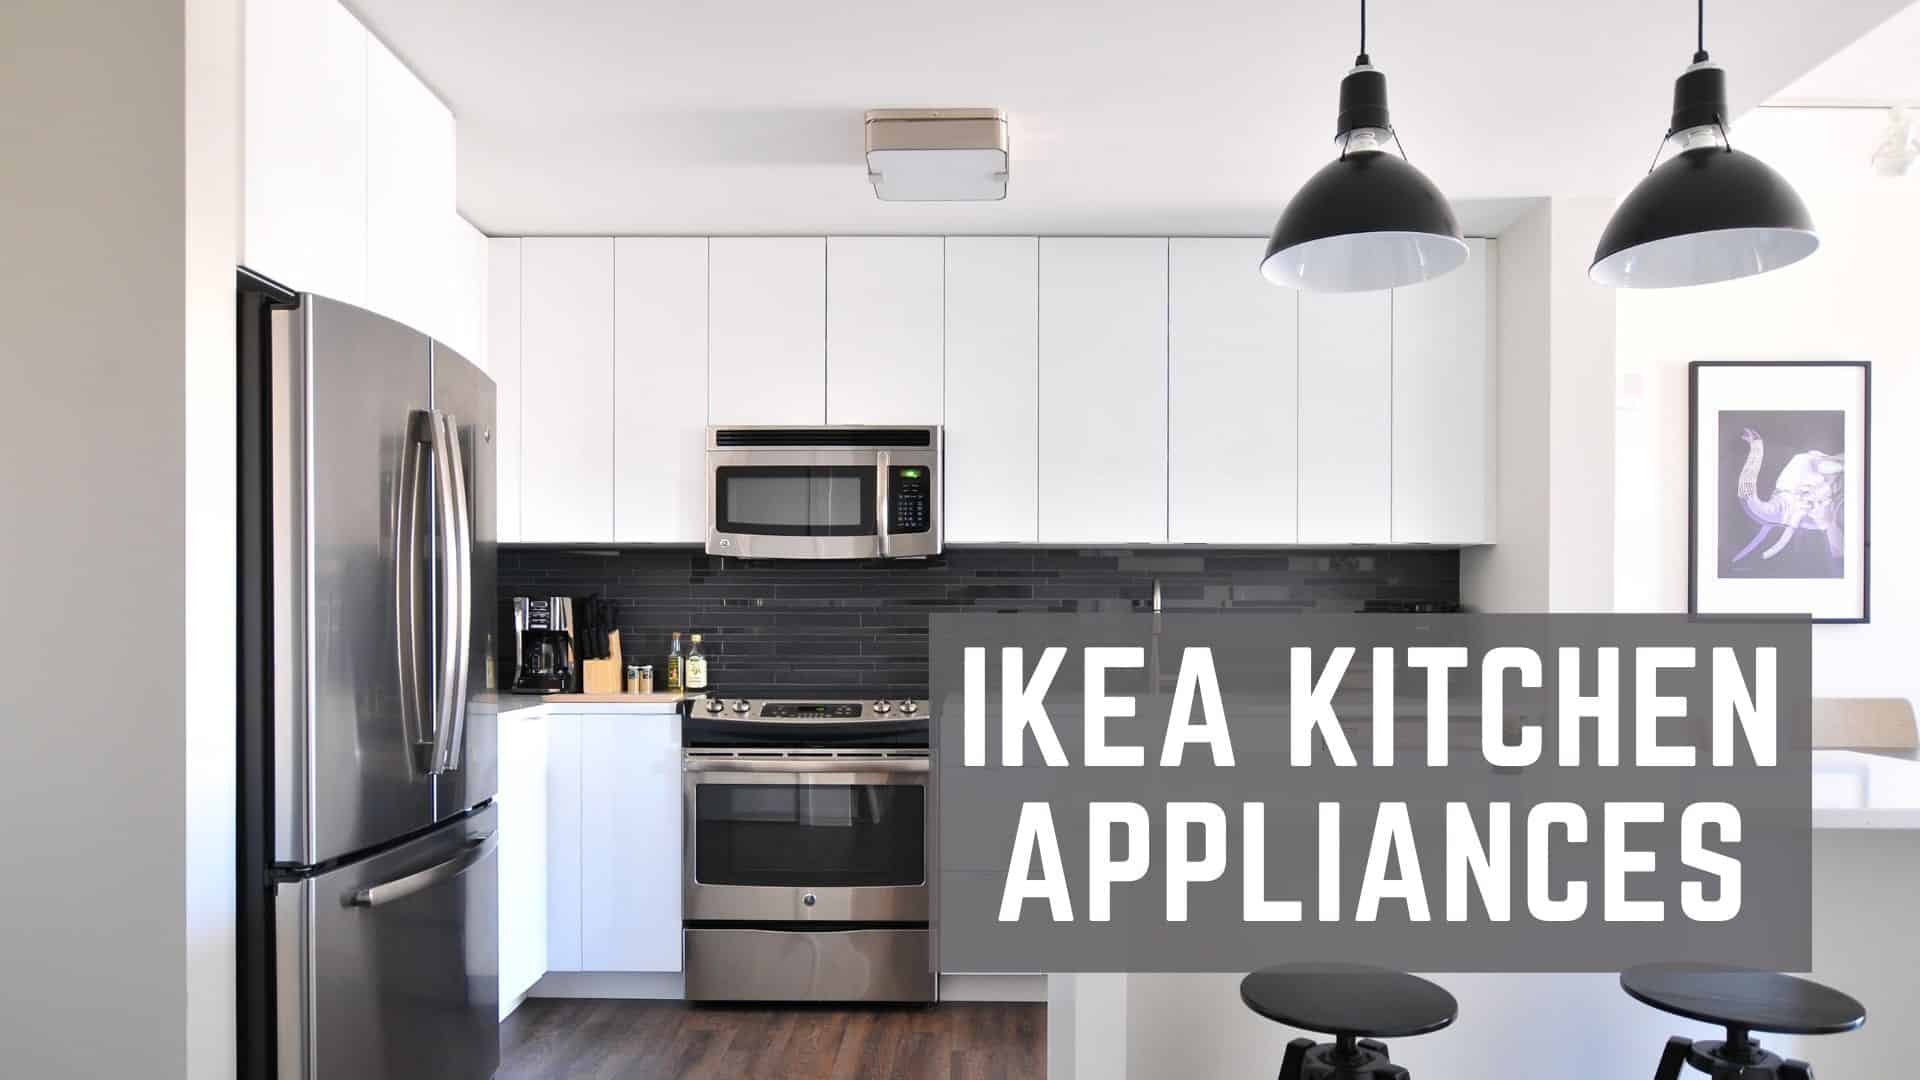 https://www.thehomestud.com/wp-content/uploads/2021/01/ikea-ktichen-appliances.jpg